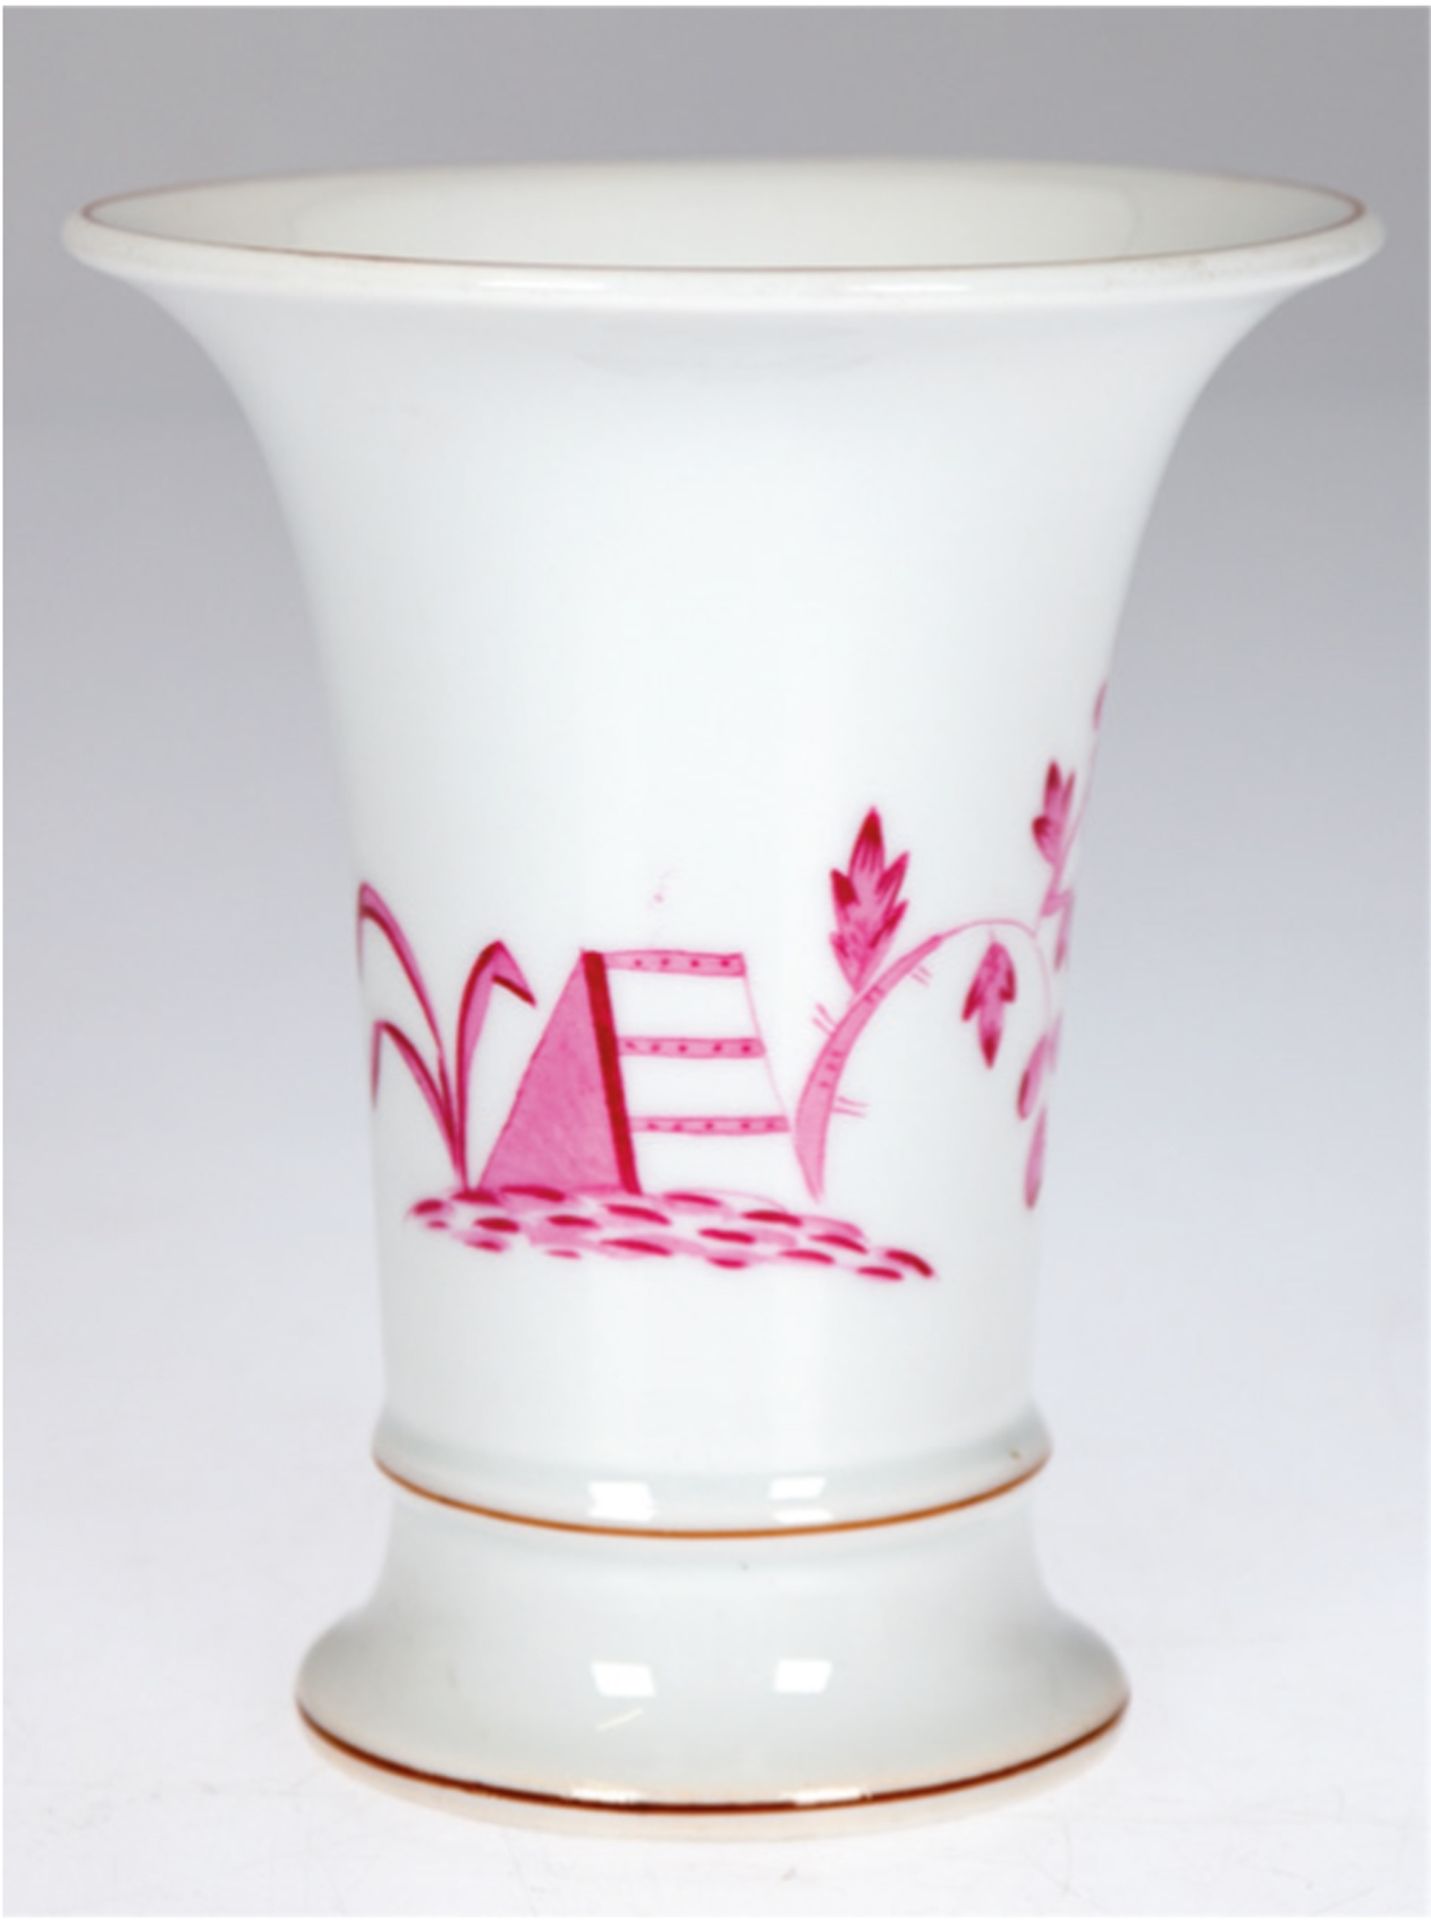 Meißen-Vase, Trompetenform, Indische Malerei mit Blattpflanze in Purpur, braune Ränder, I. Wahl, H.